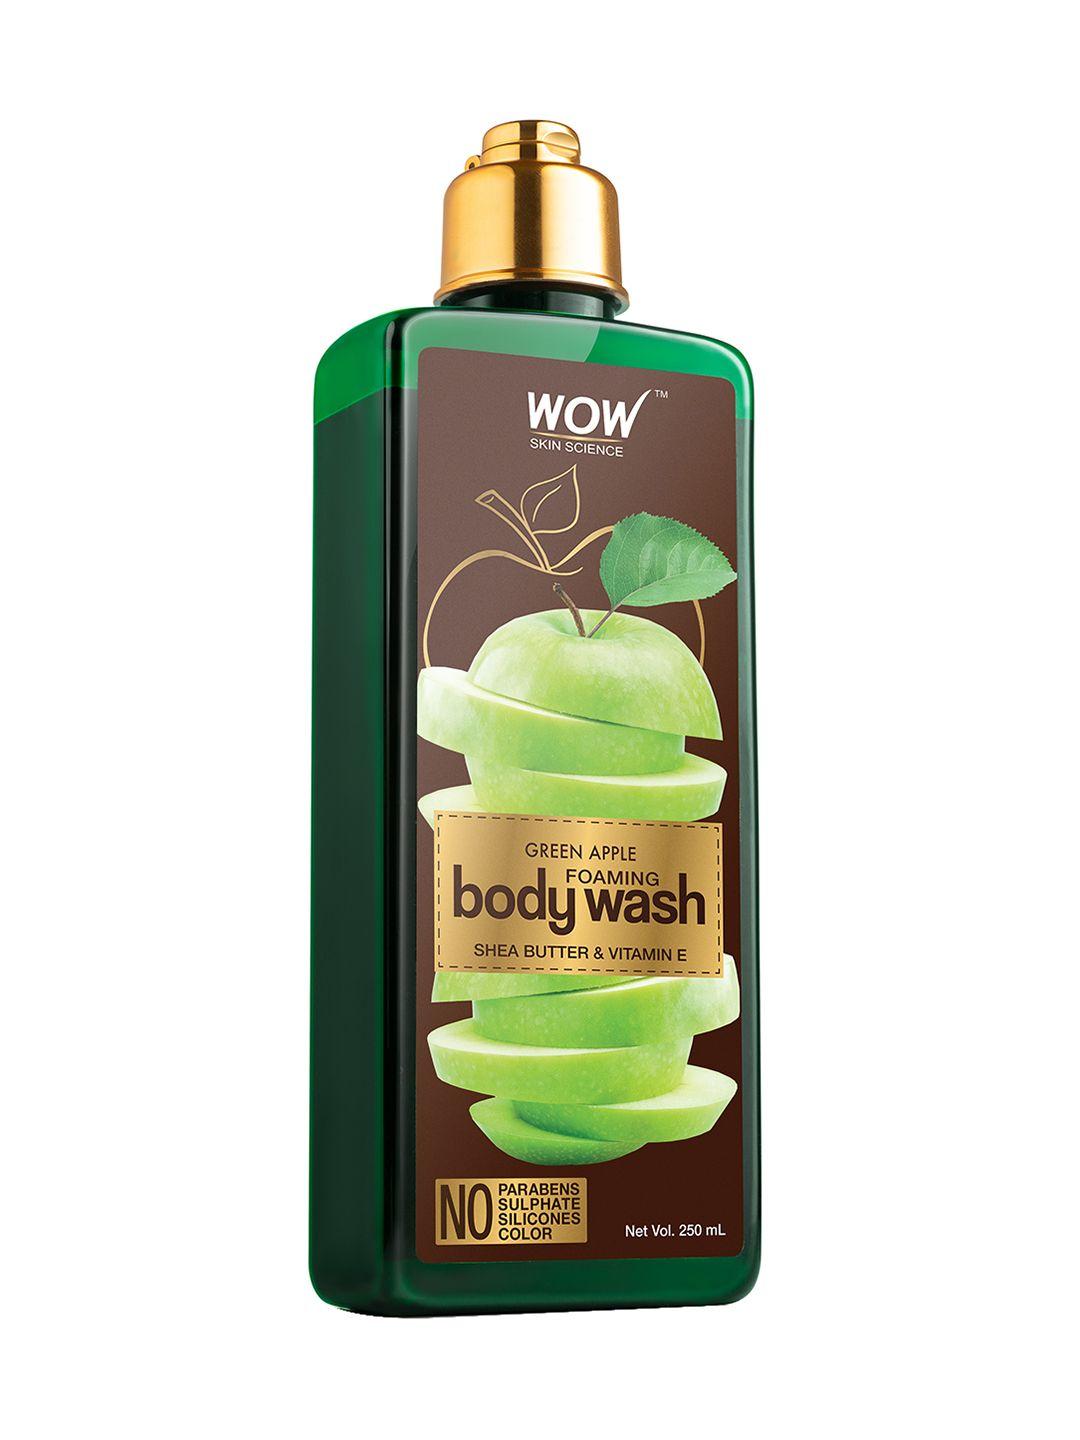 wow skin science green apple foaming body wash 250ml